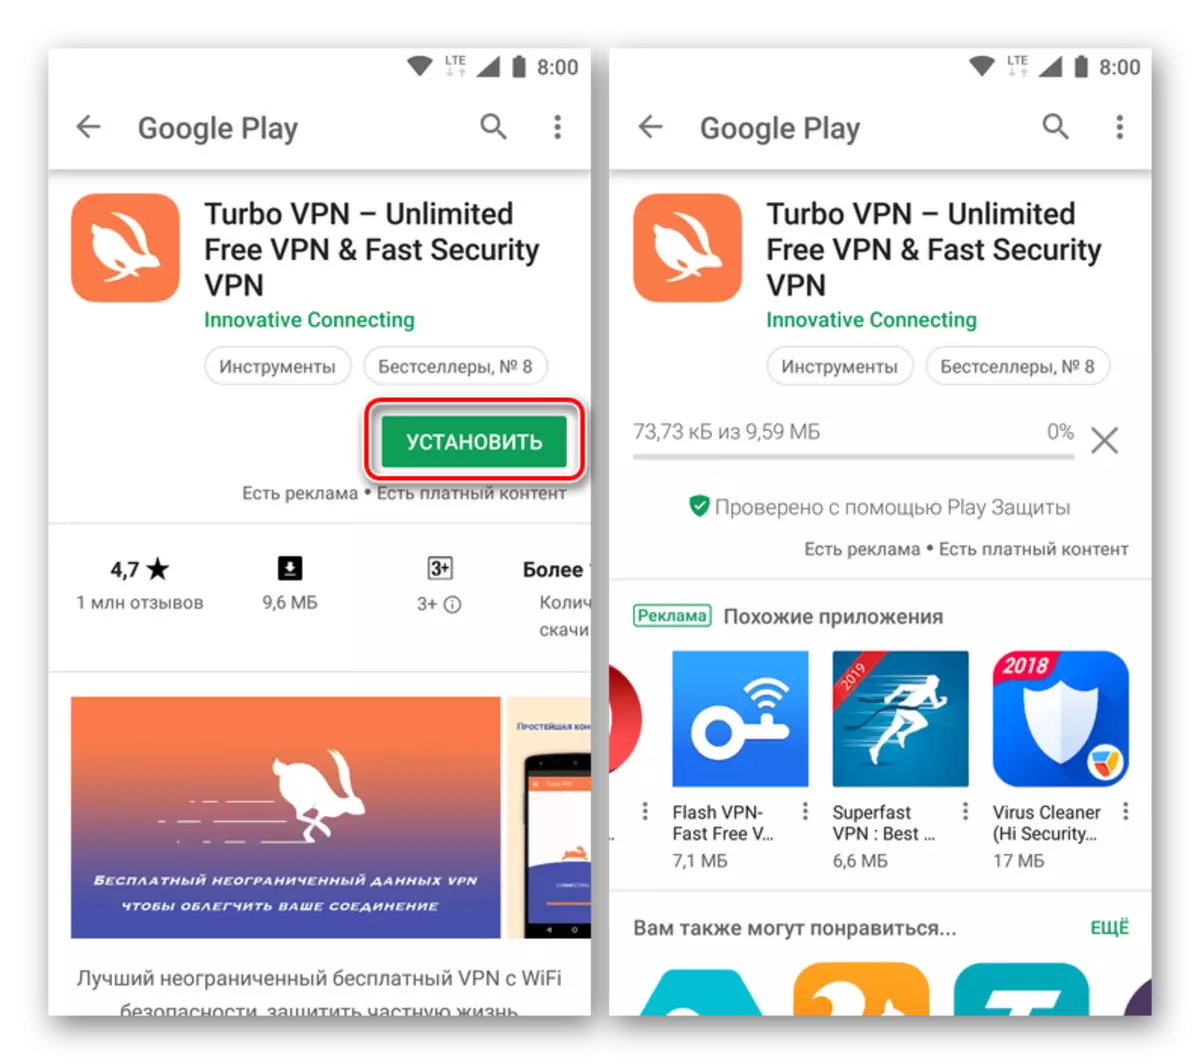 ទាញយកកម្មវិធី Turbo VPN នៅក្នុងទីផ្សារ Google Play សម្រាប់ប្រព័ន្ធប្រតិបត្តិការ Android